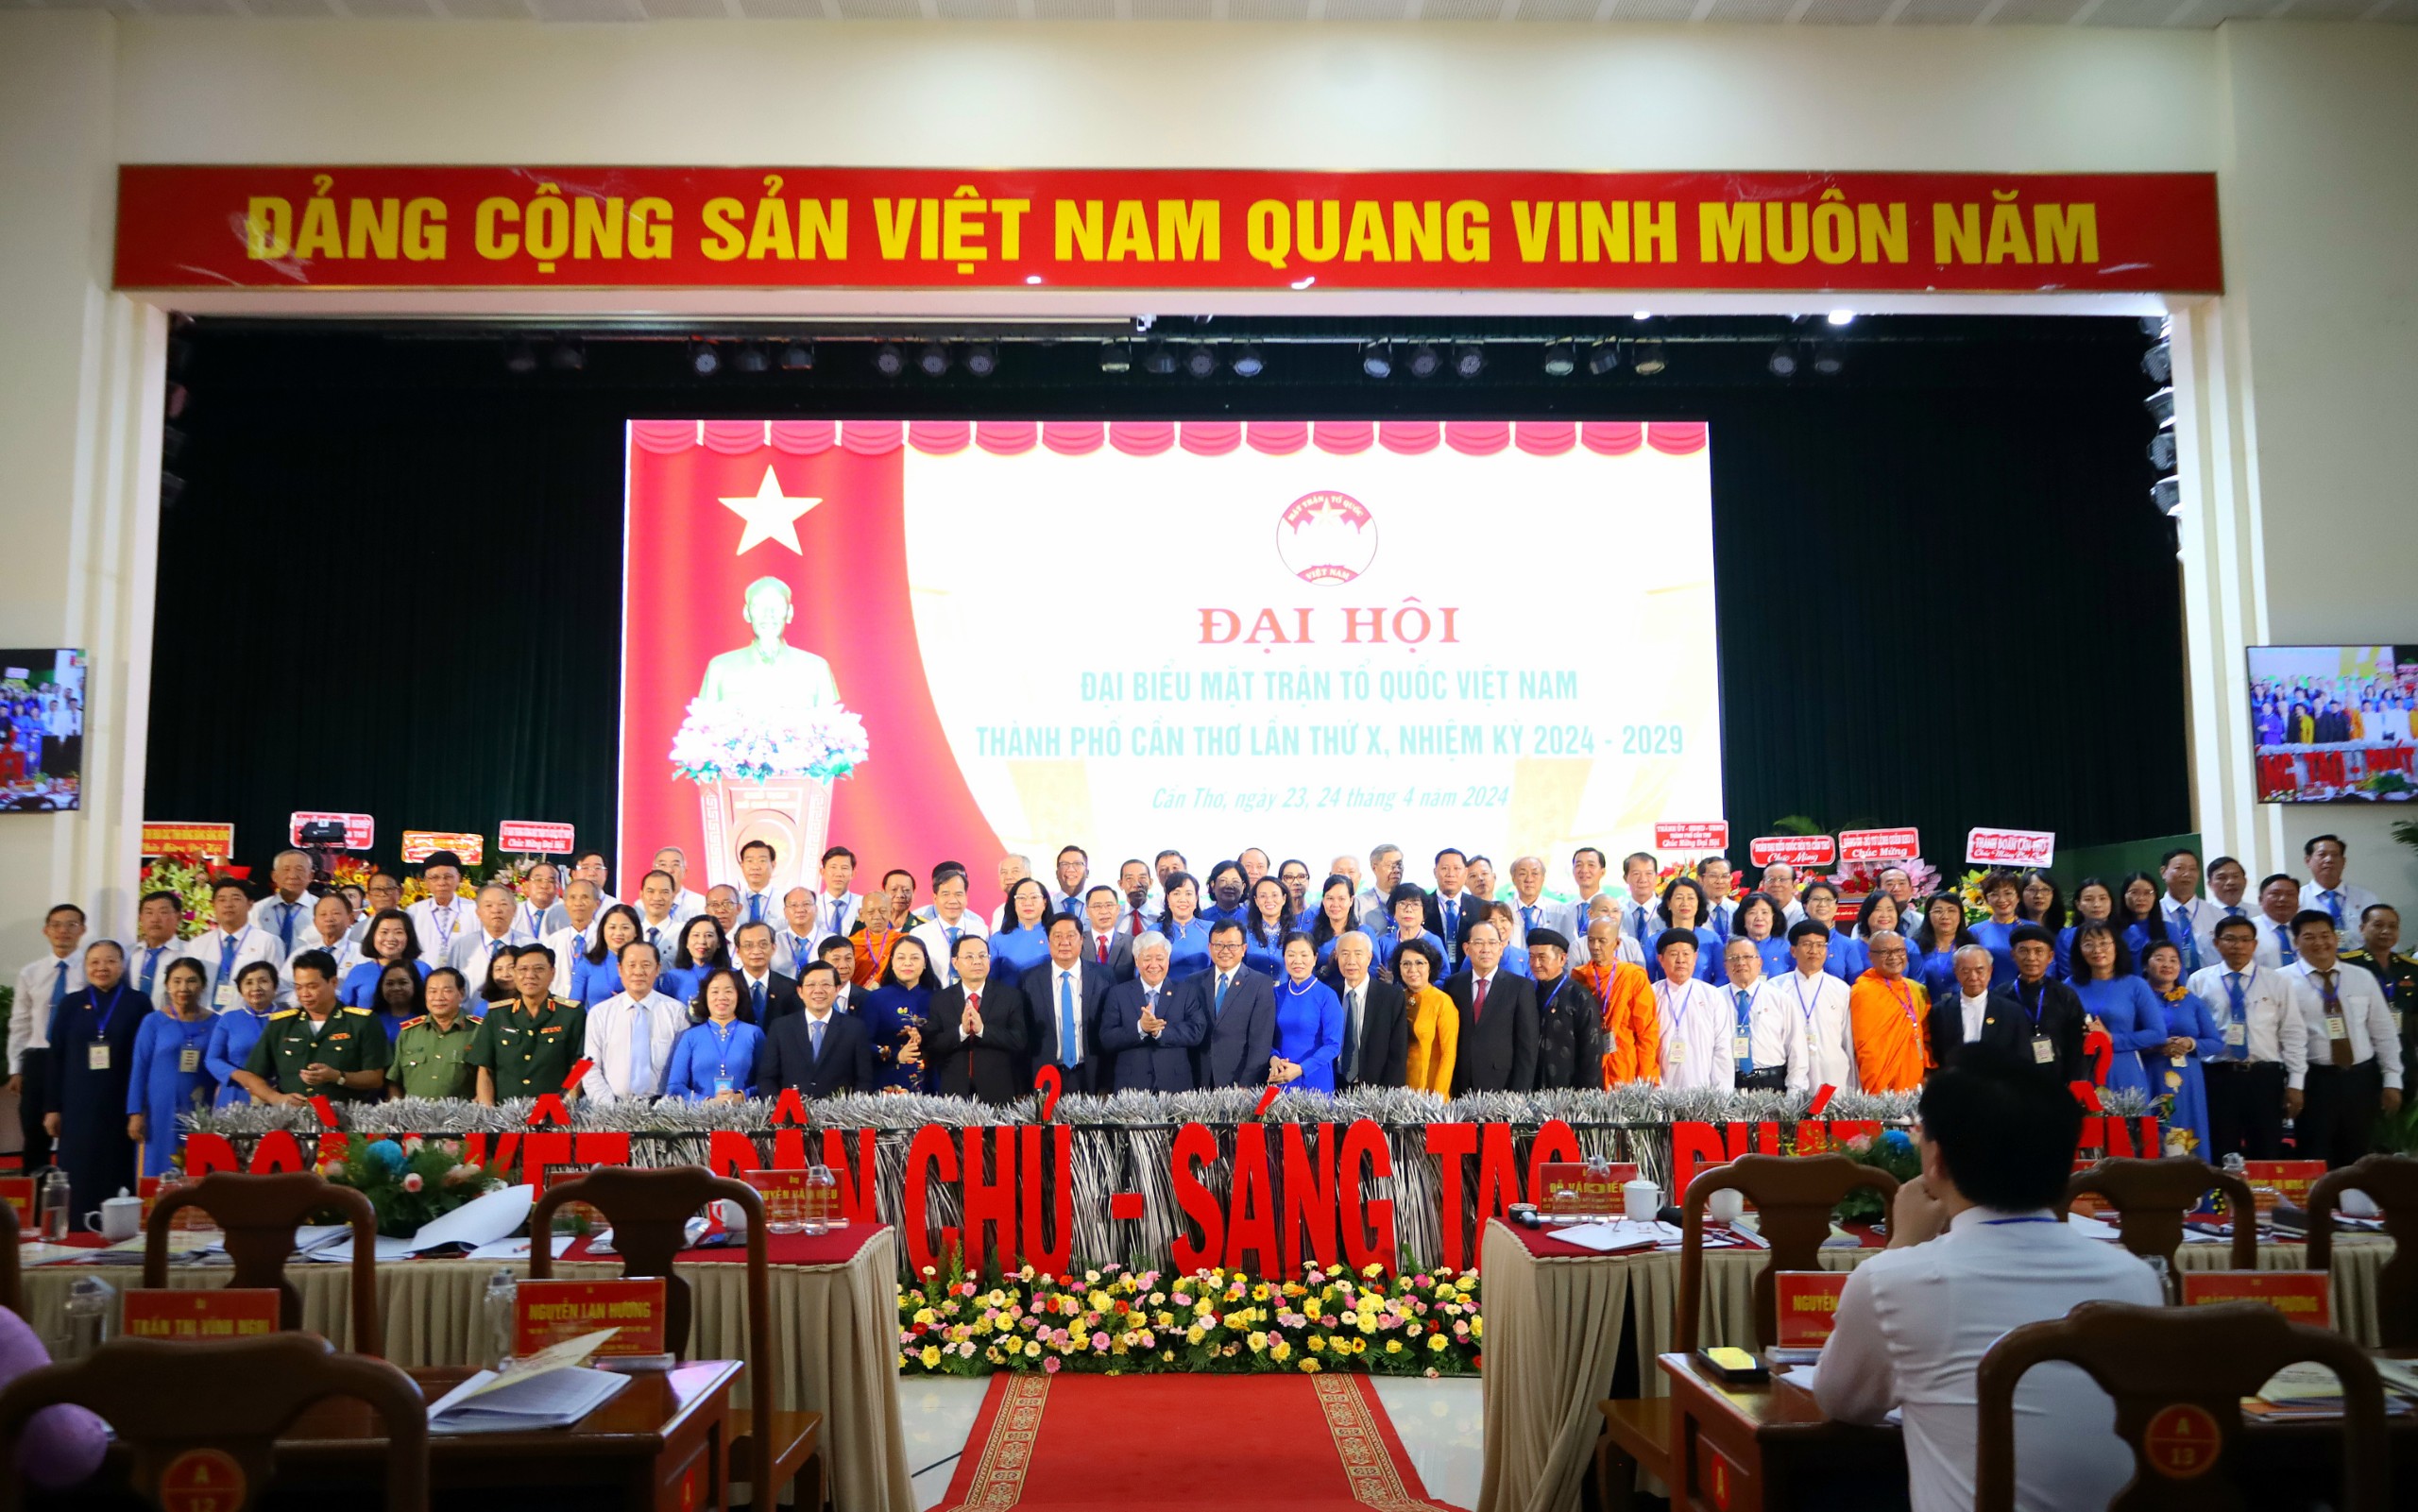 Lãnh đạo Trung ương và TP. Cần Thơ chụp hình lưu niệm cùng 89 Ủy viên Ủy ban MTTQ Việt Nam TP. Cần Thơ Khóa X nhiệm kỳ 2024 - 2029 ra mắt Đại hội.